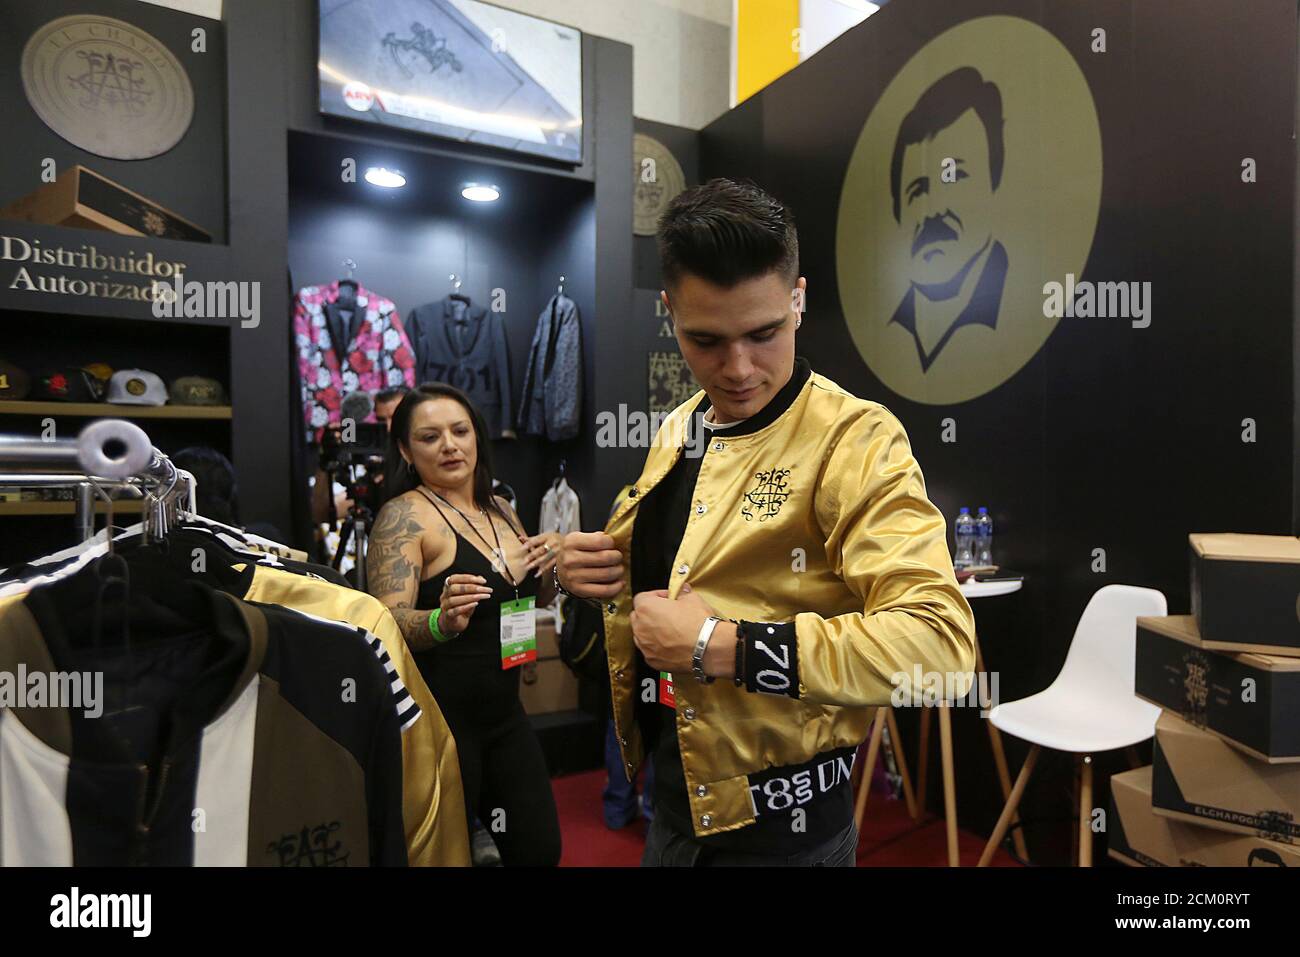 Un hombre prueba una chaqueta en un stand de la Marca de ropa 'el Chapo 701',  propiedad de su hija Alejandrina Gisselle Guzman, en la feria Intermoda en  Guadalajara, México 16 de